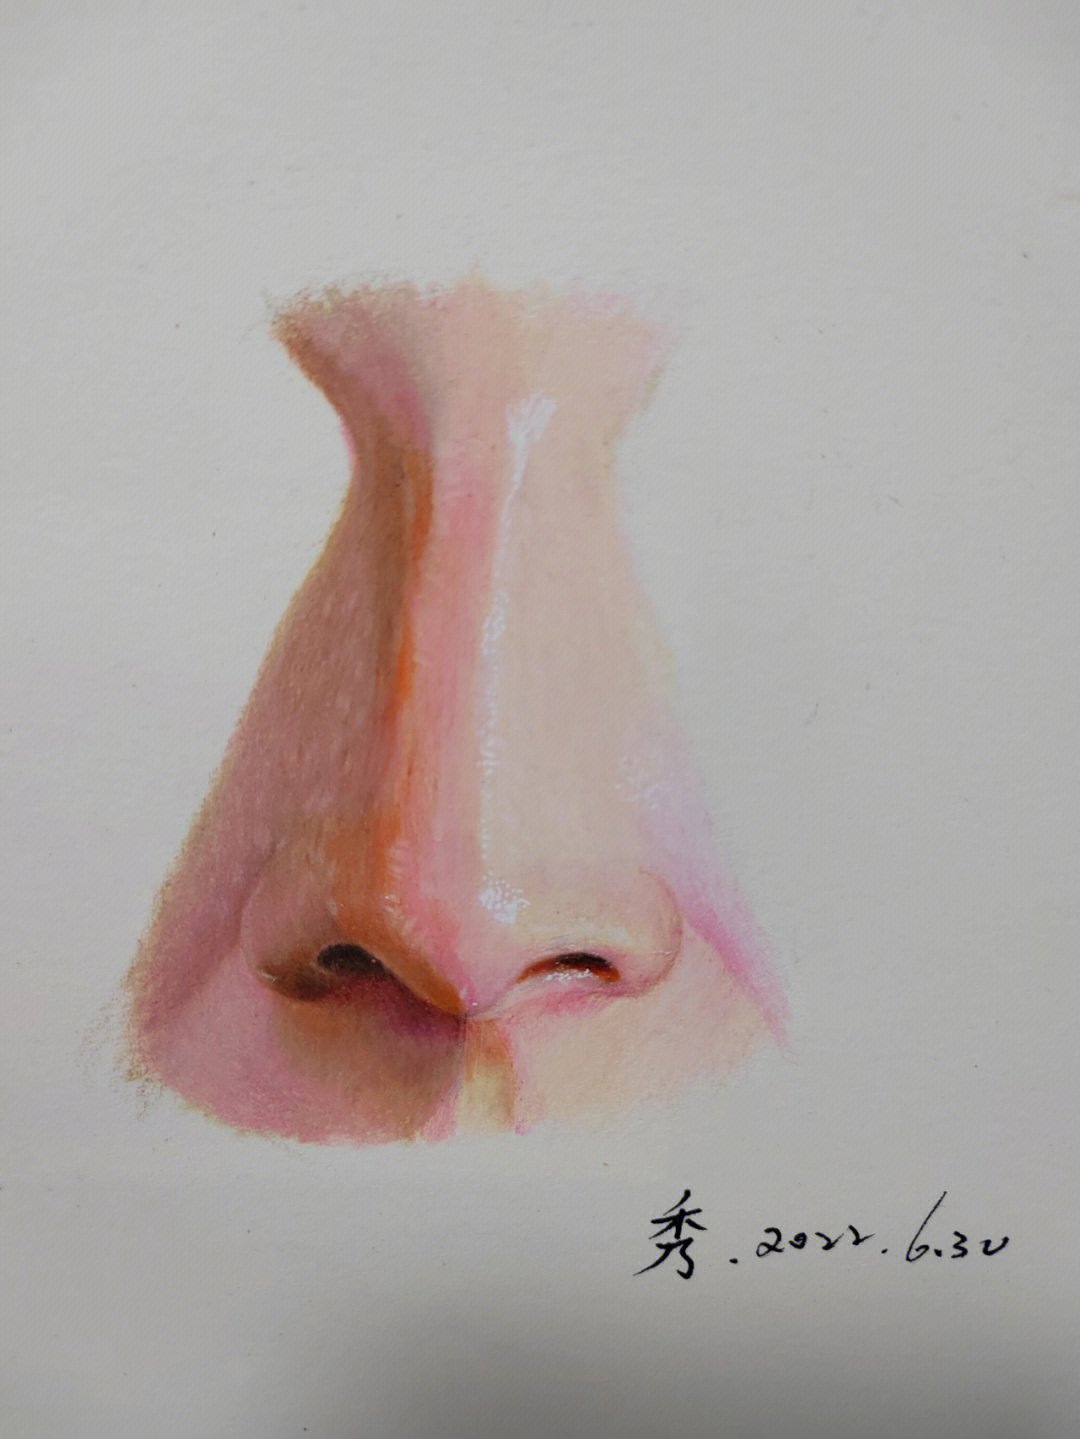 鼻子彩铅画